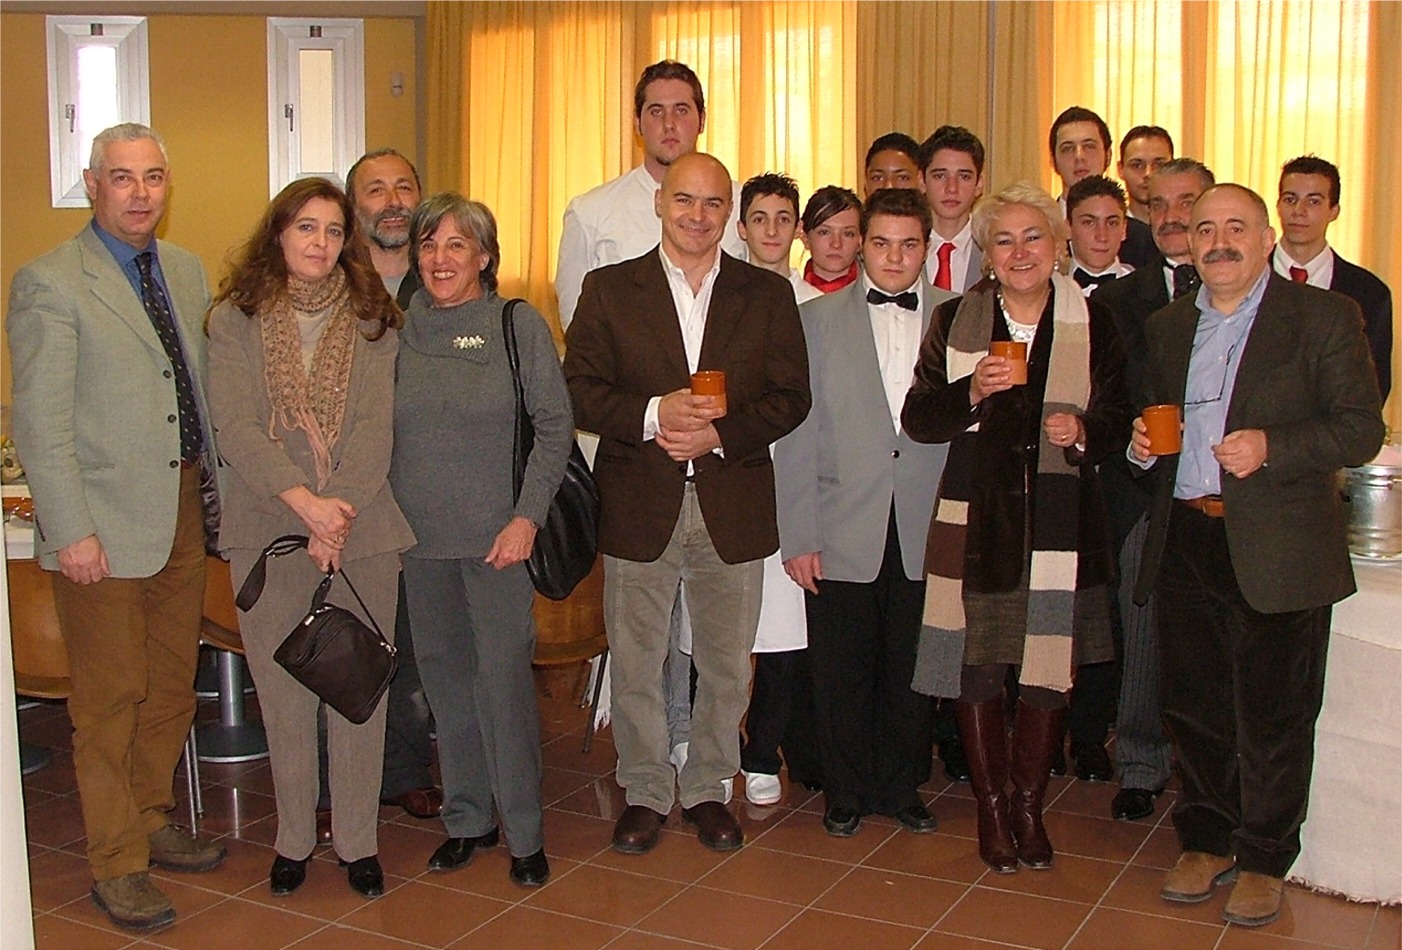 L'assessore provinciale alla pubblica istruzione Marzia Monciatti (seconda da destra in prima fila) con Luca Zingaretti (al centro) e gli allievi e insegnanti dell'Istituto alberghiero 